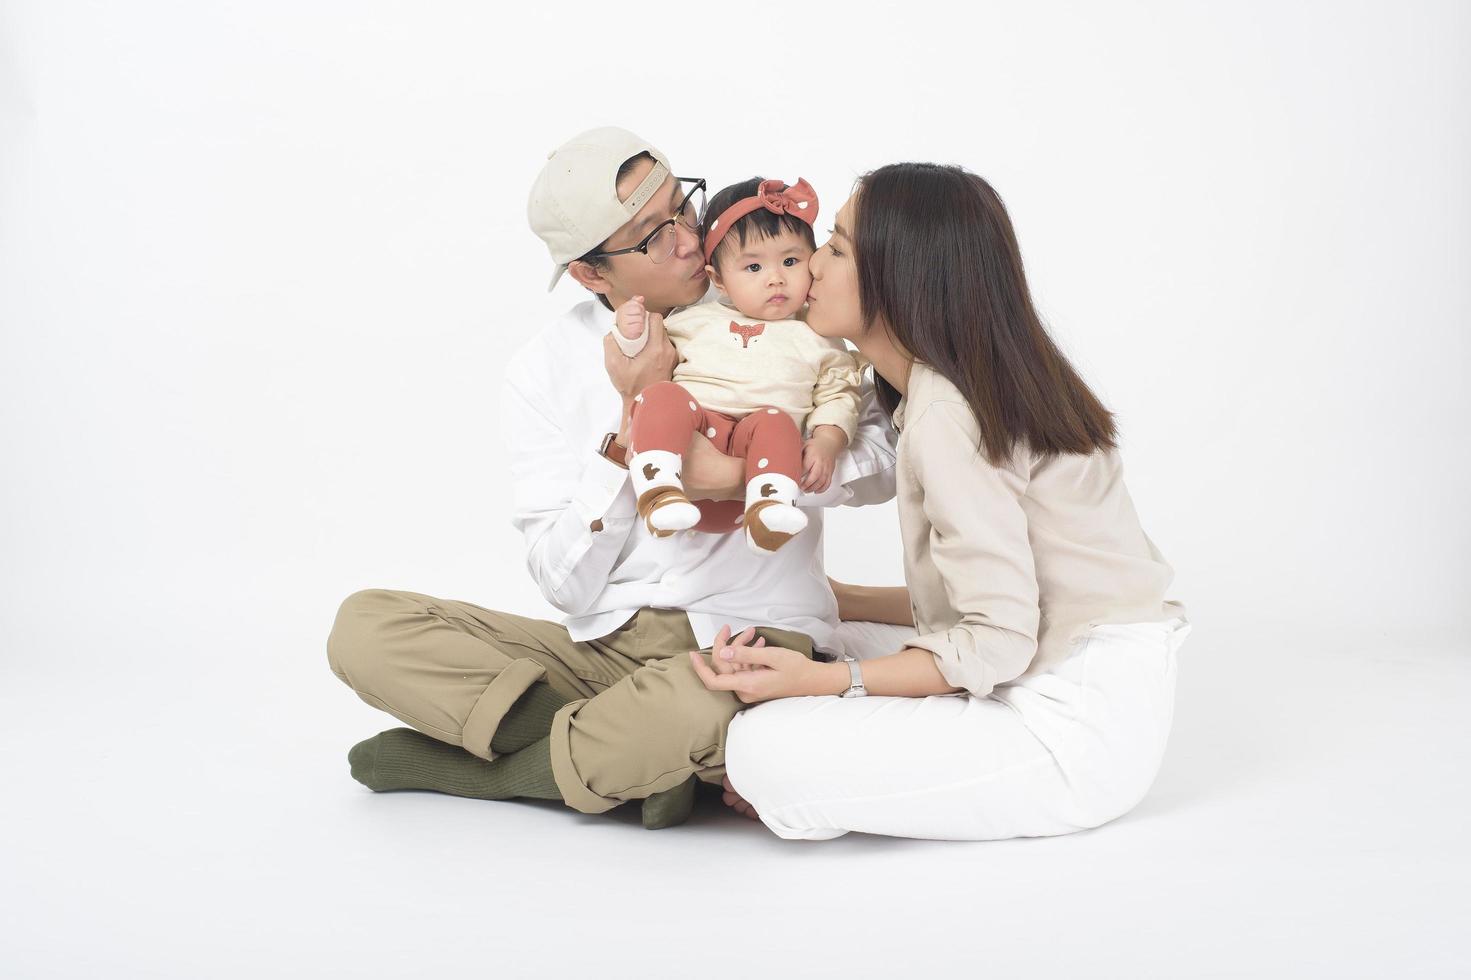 famille asiatique heureuse sur fond blanc photo